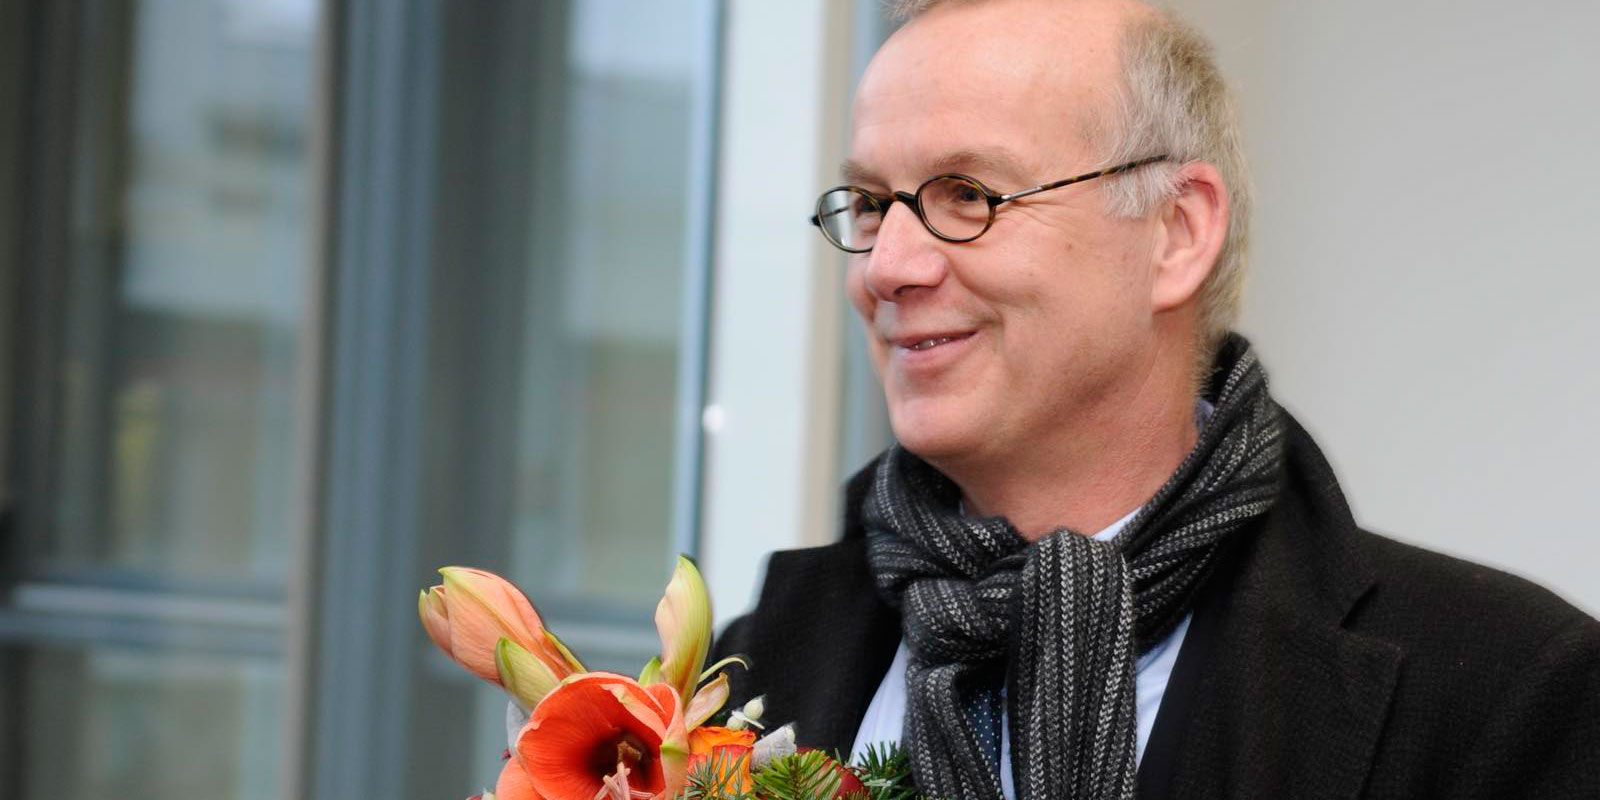 Man sieht Bernd Scholz-Reiter von der Seite wie er lächelt und einen Blumenstrauß in den Händen hält.